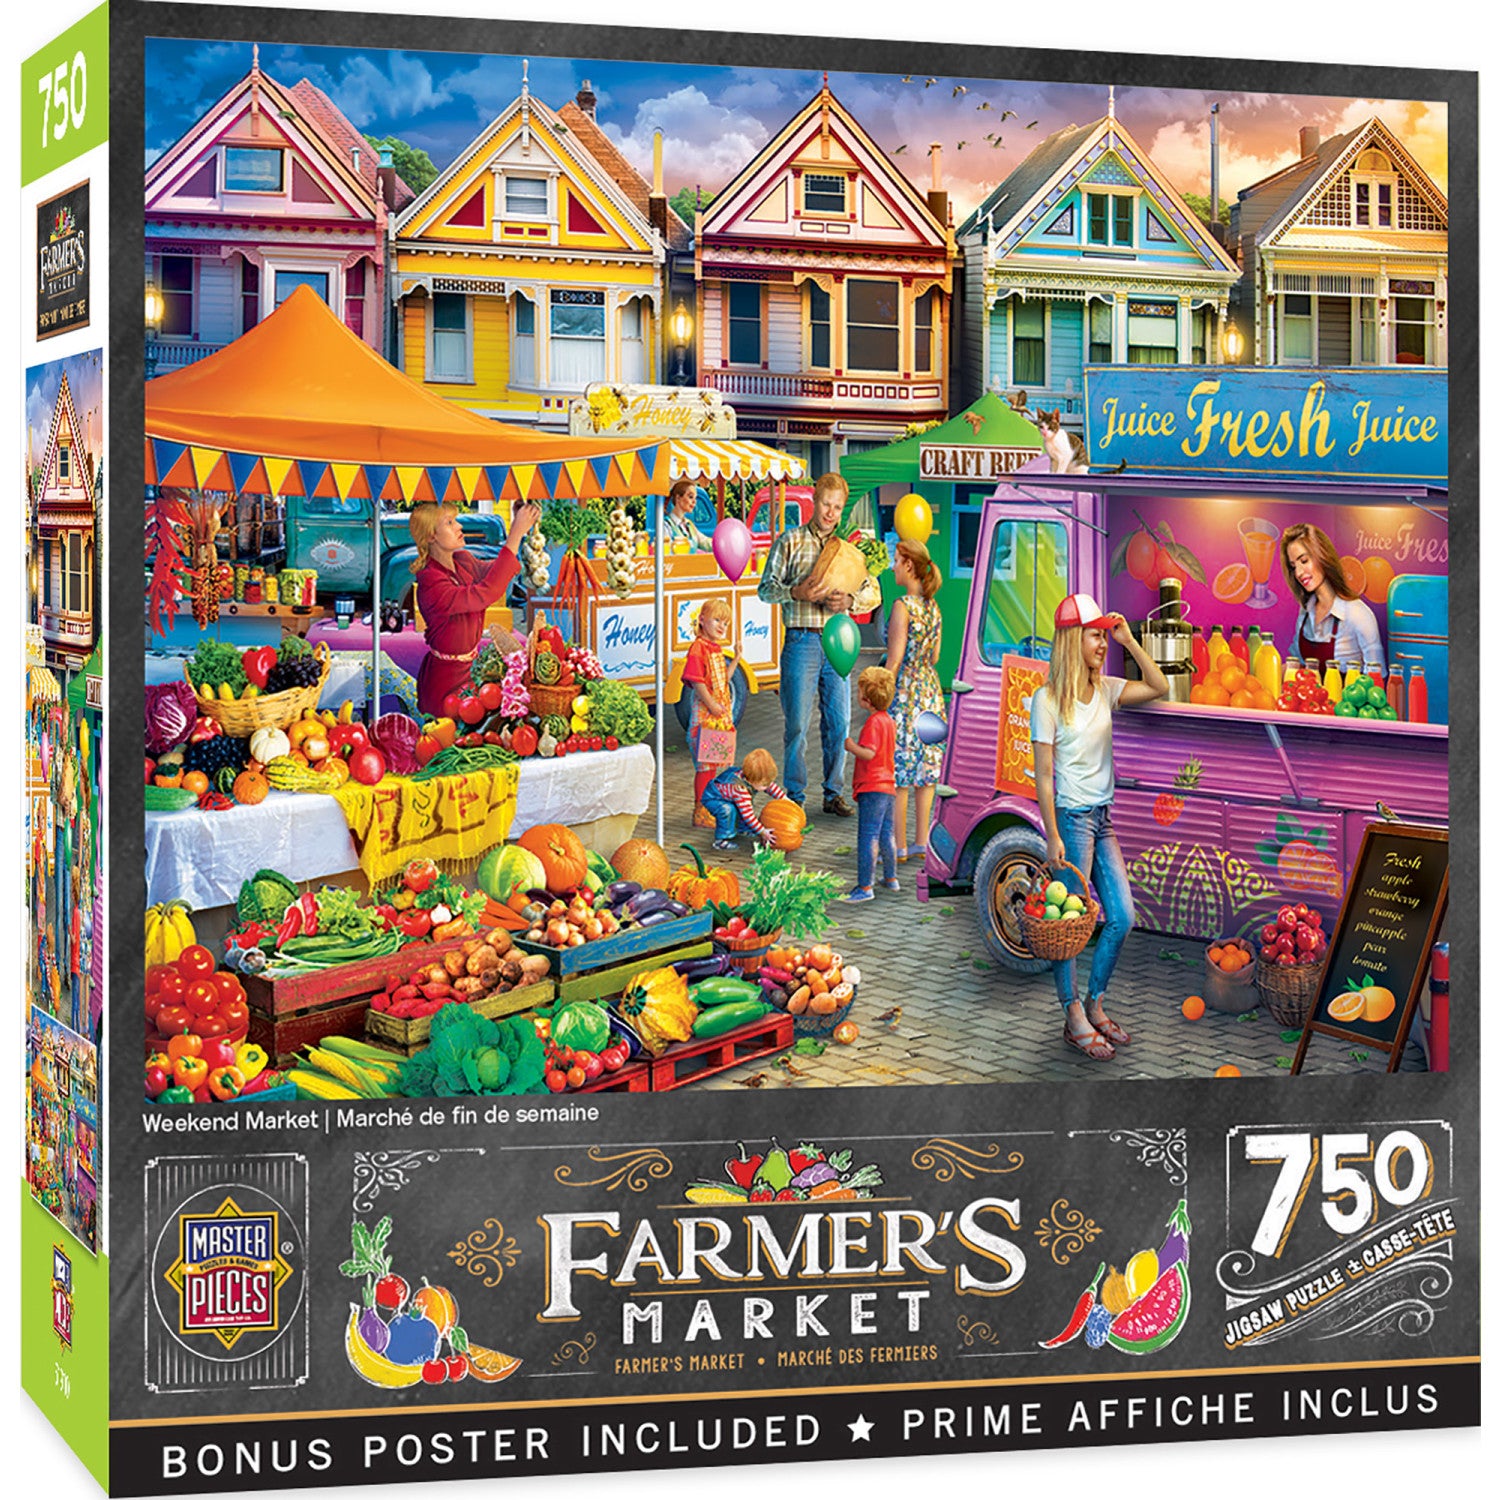 Farmer's Market - Weekend Market 750 Piece Jigsaw Puzzle